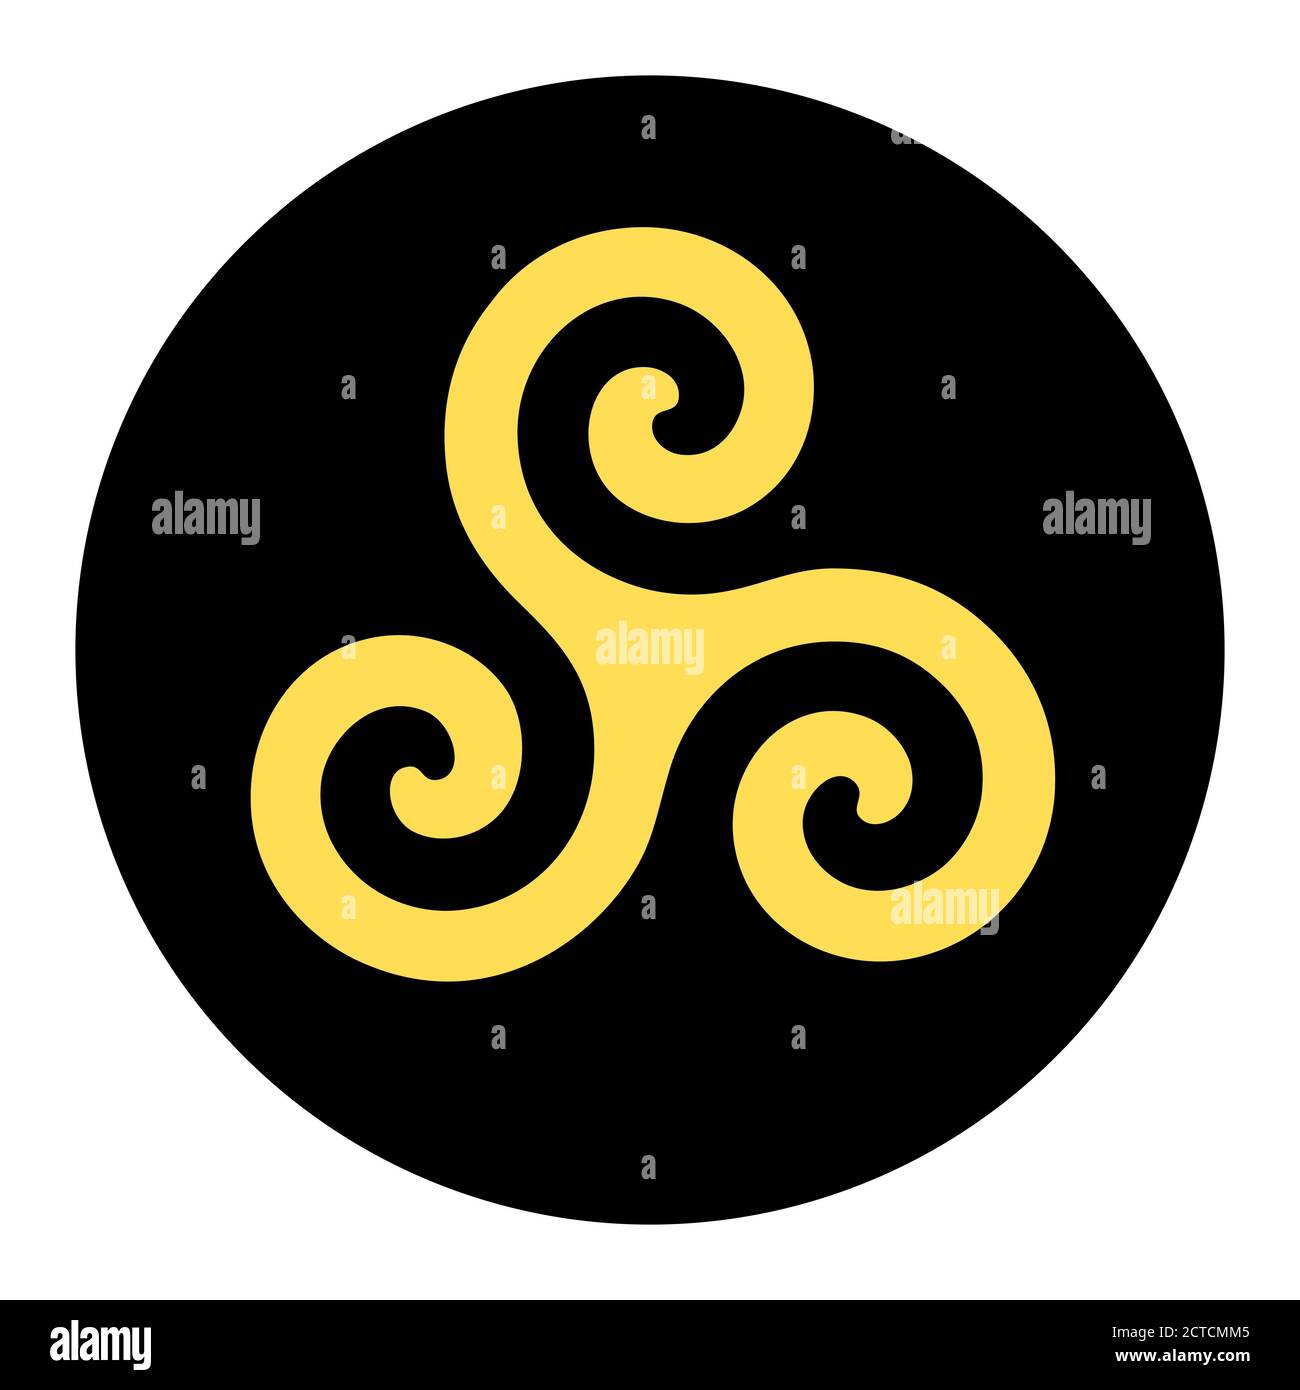 Yellow triskelion symbol icon in a black circle Stock Photo